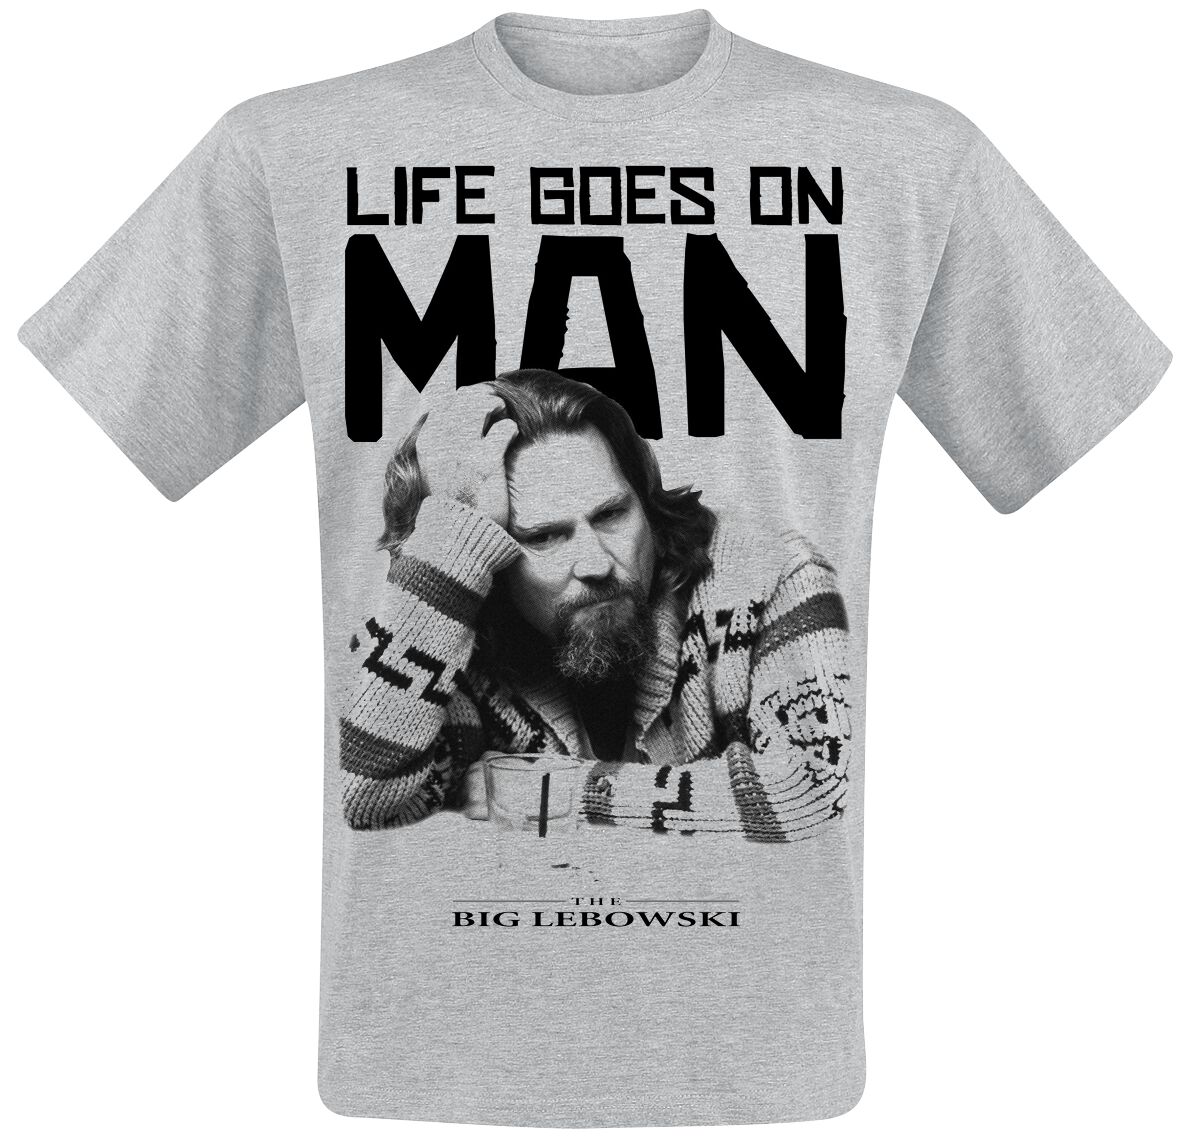 The Big Lebowski T-Shirt - Life Goes On Man - S bis XXL - für Männer - Größe S - grau meliert  - Lizenzierter Fanartikel